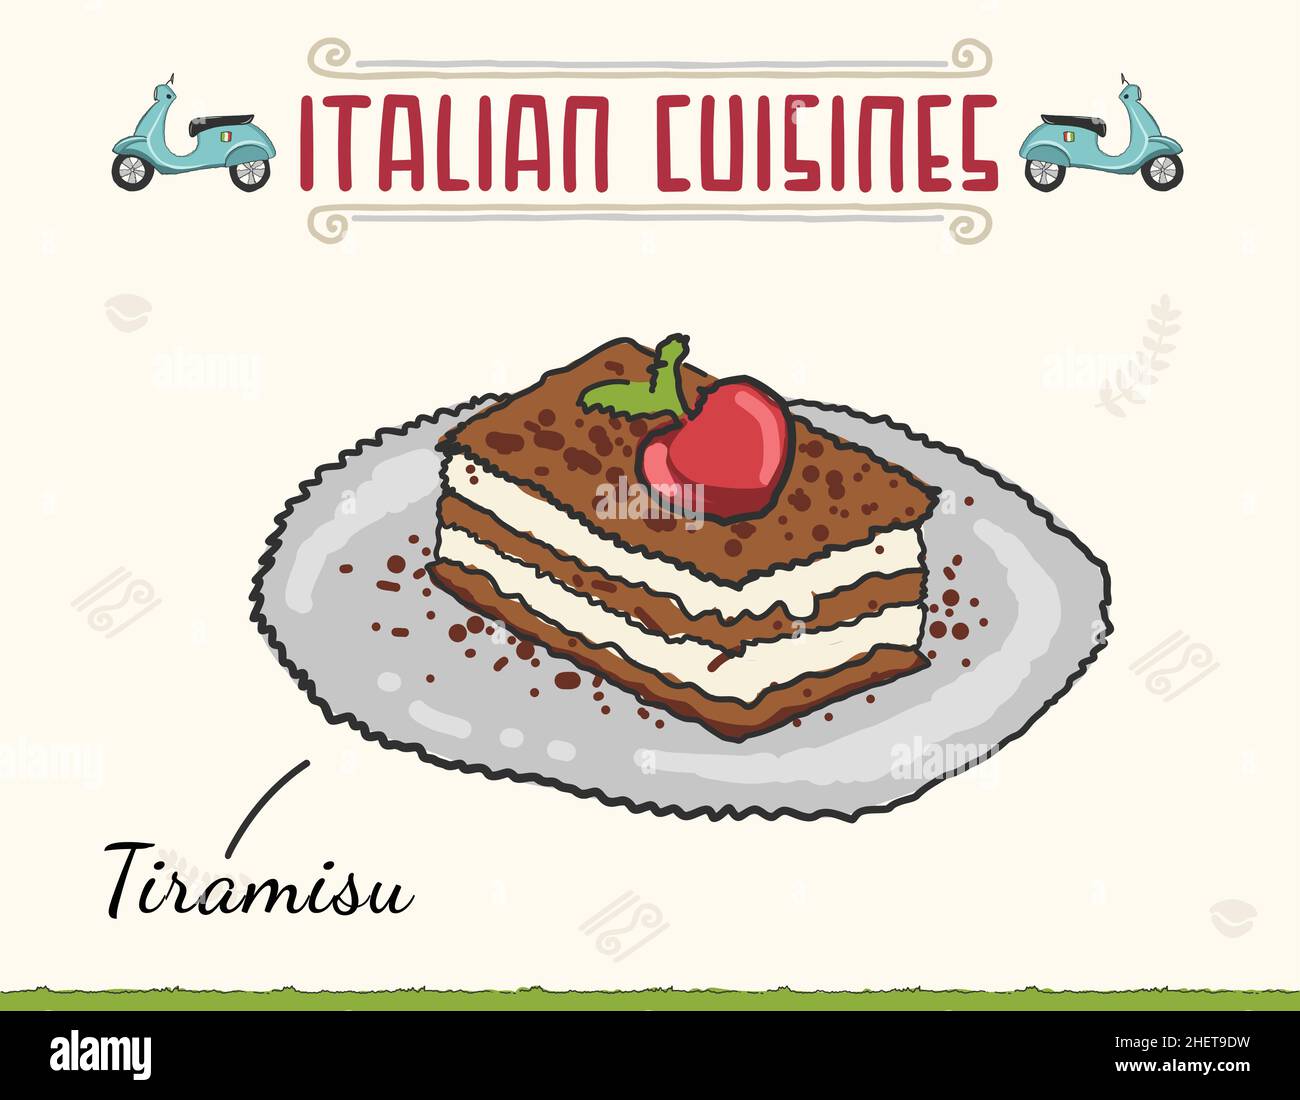 Tiramisu gâteau italien dessert.Illustration vectorielle.Gâteau italien Tiramisu superposé à la cerise, à la crème fouettée et au mascarpone Illustration vectorielle Illustration de Vecteur